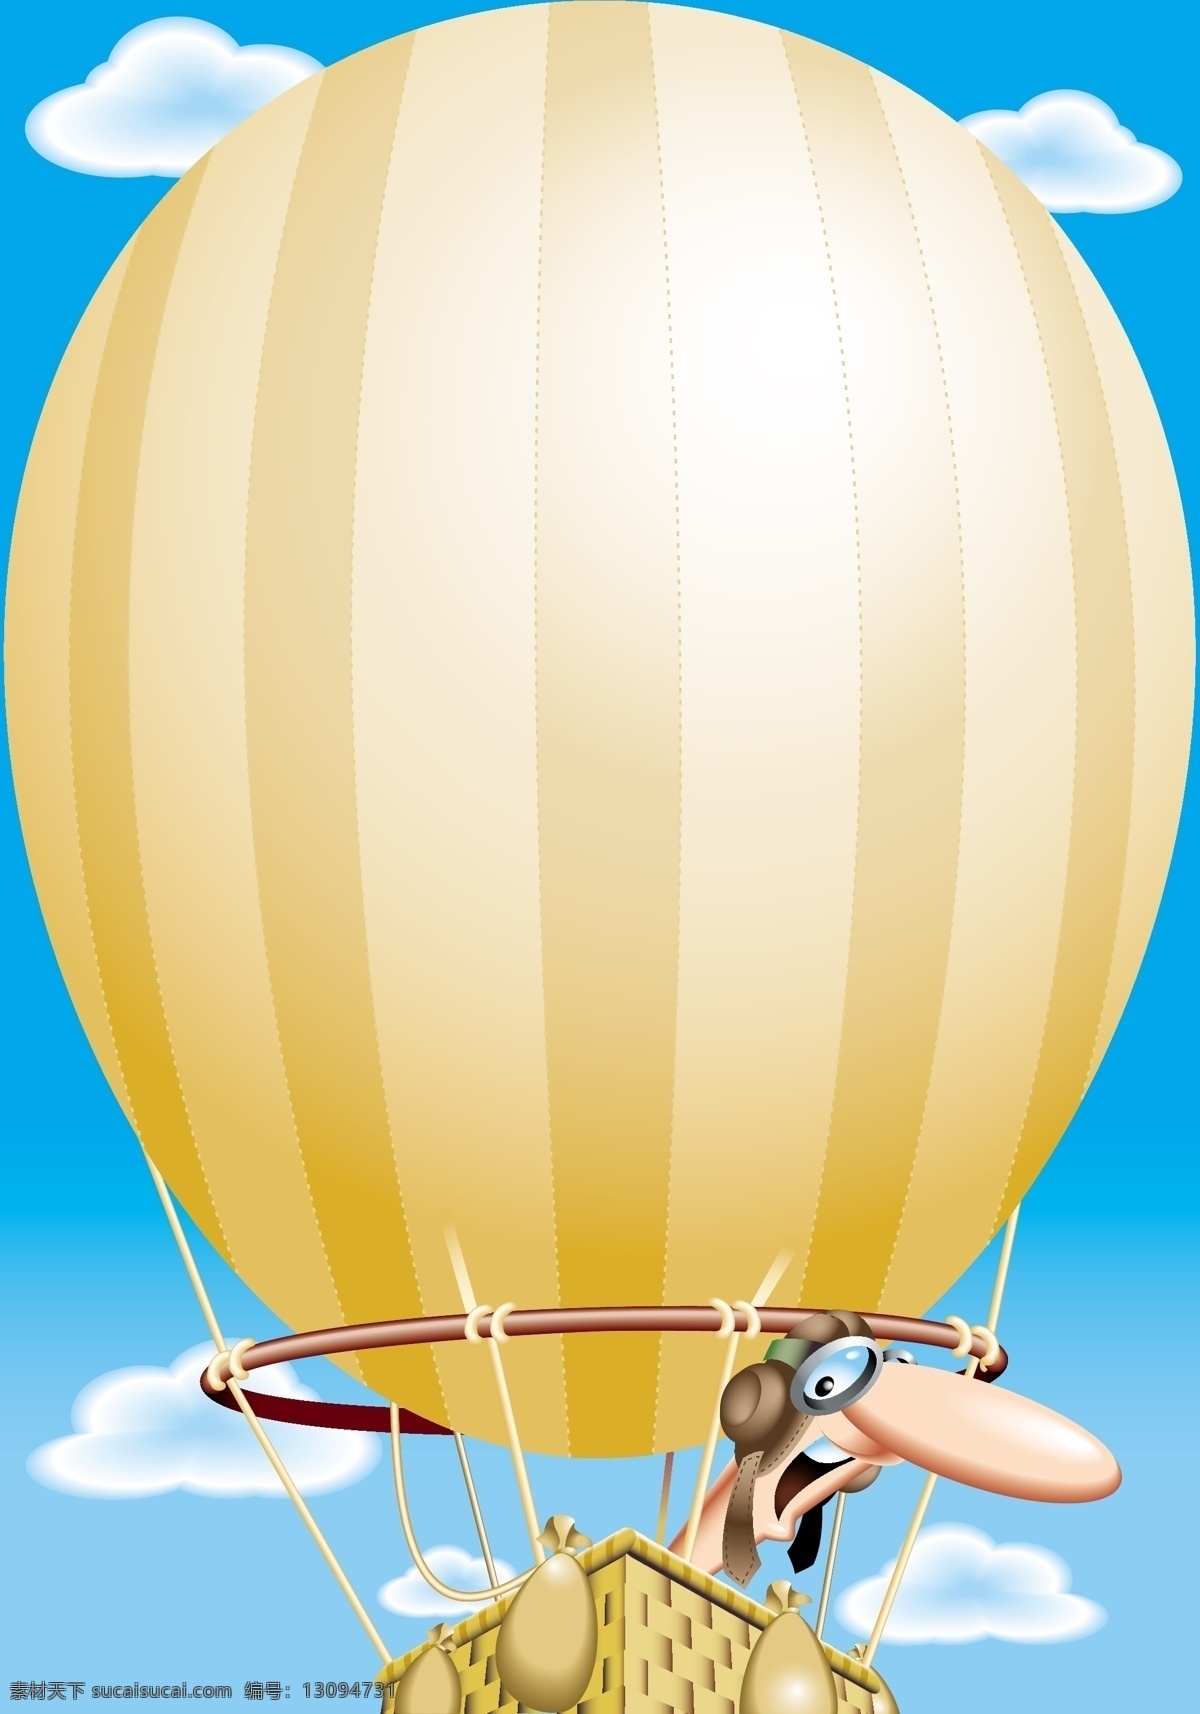 热气球升空图 热气球 天空 云 动物 升空 图 白色